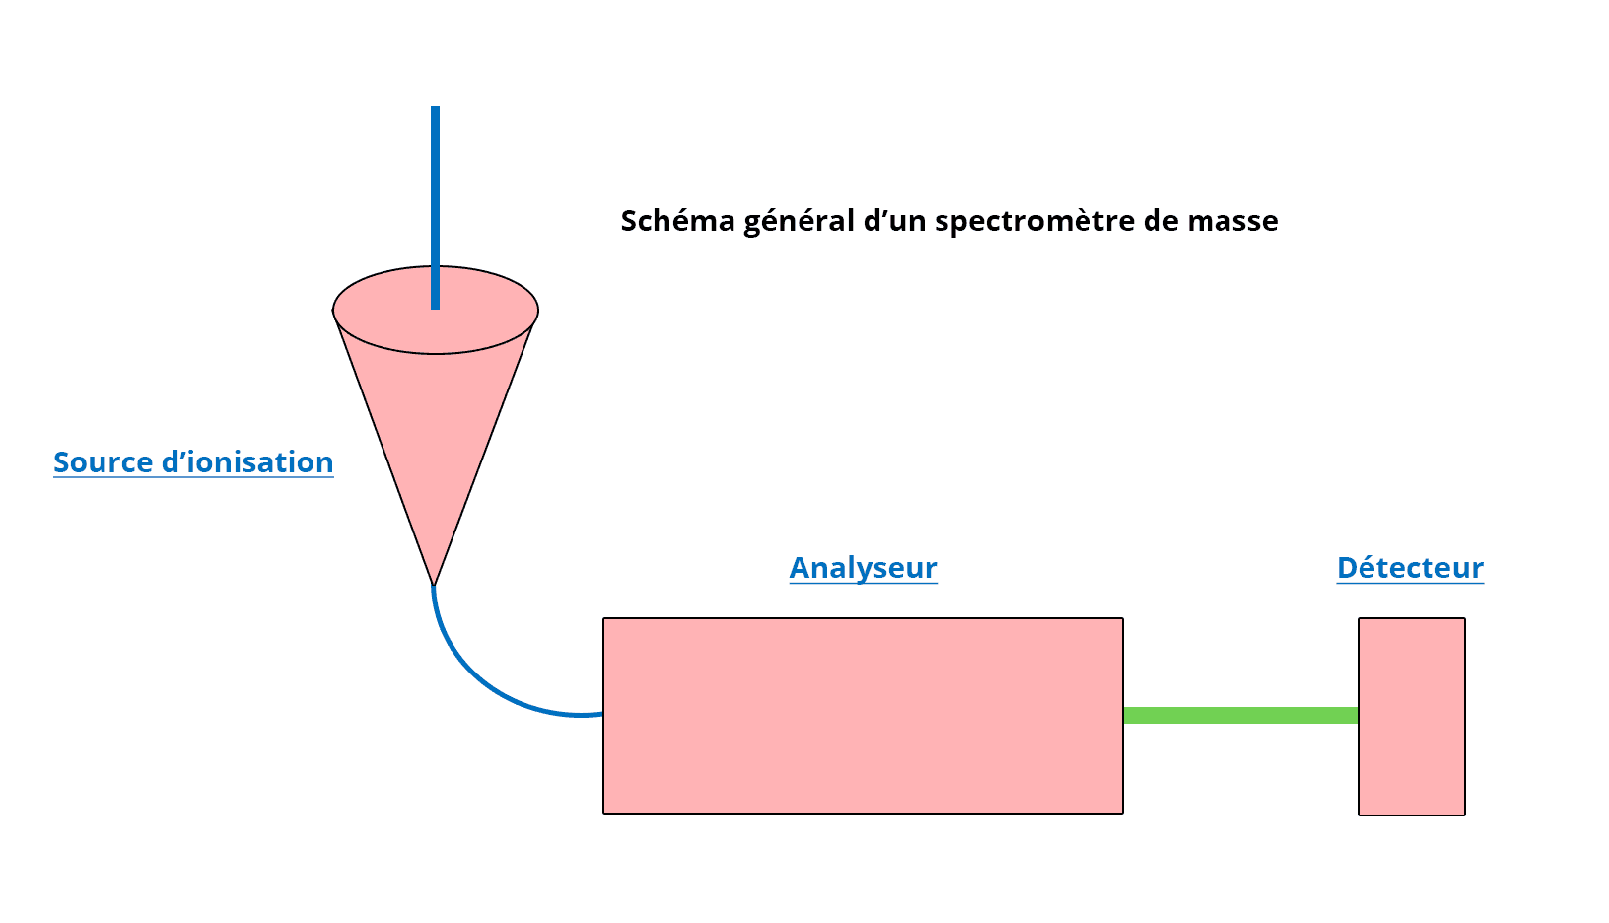 Schéma général d'un spectromètre de masse. A gauche un conne représentant la source d'ionisation. A la pointe du cône se trouve un trait bleu se dirigeant vers un rectangle représentant l'analyseur. Enfin, à droite de l'analyseur se trouve un trait vert le reliant à un autre rectangle, le détecteur.